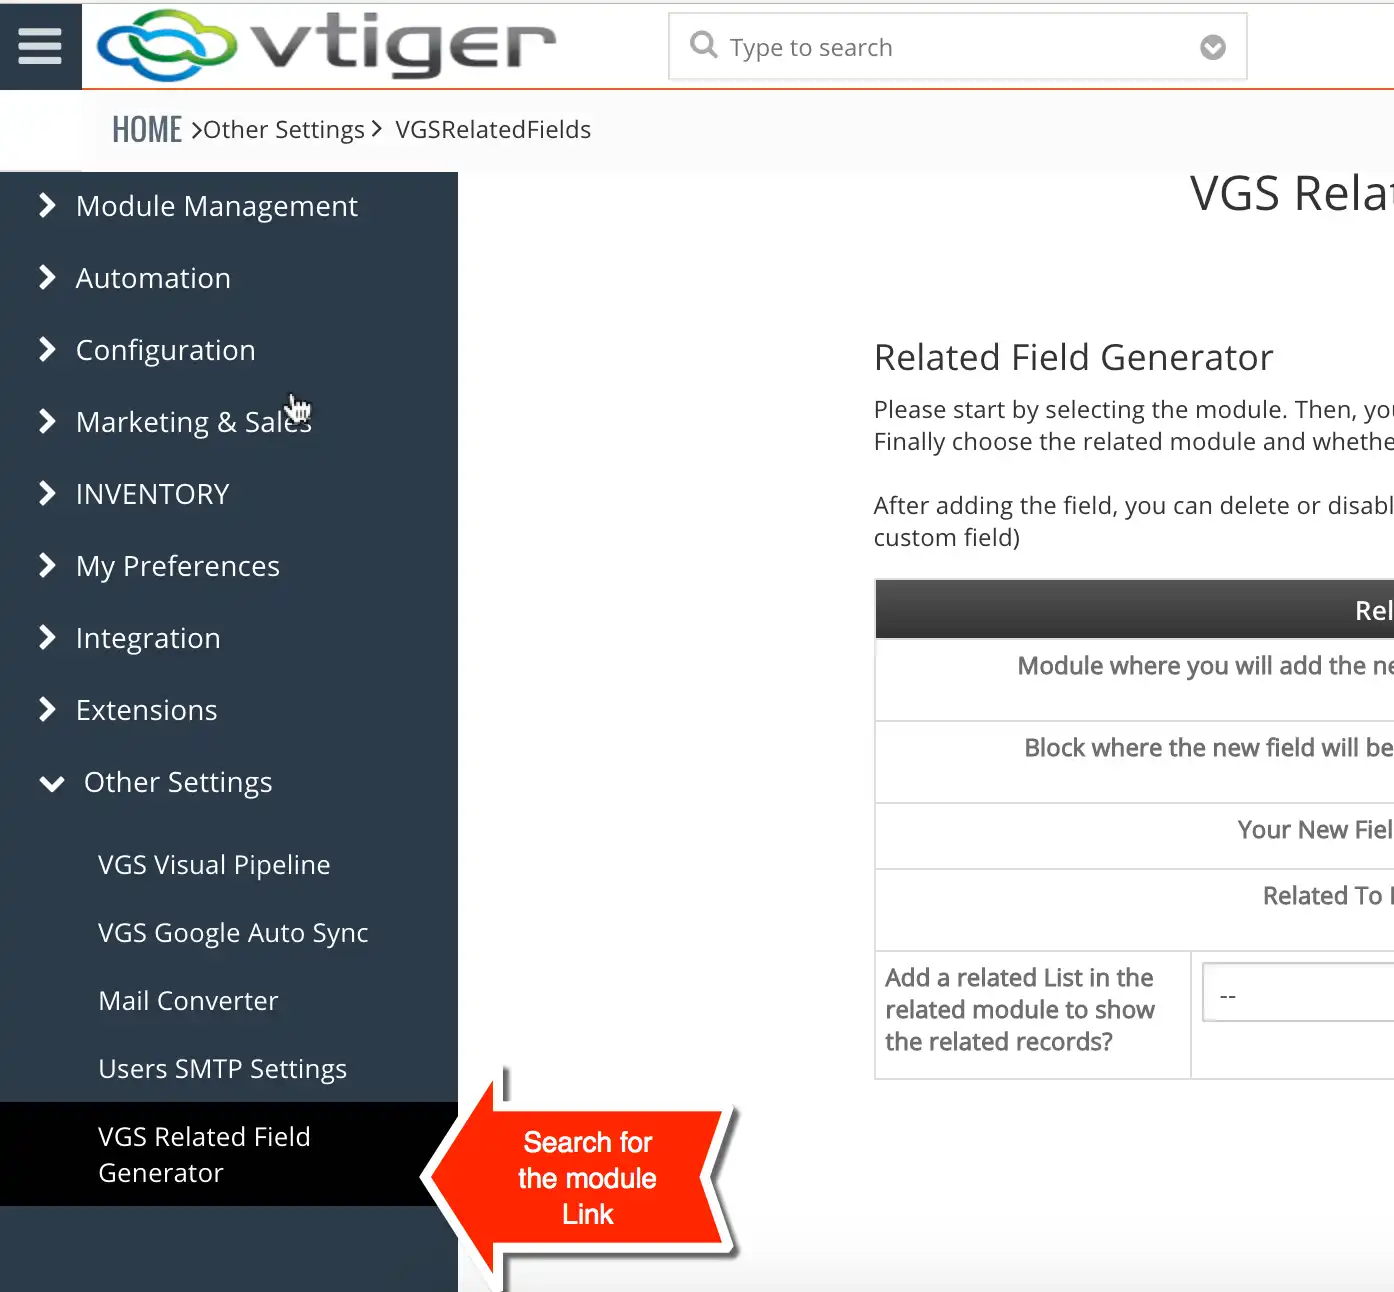 ابزار وب یا برنامه وب VGS Related Field Generator را دانلود کنید